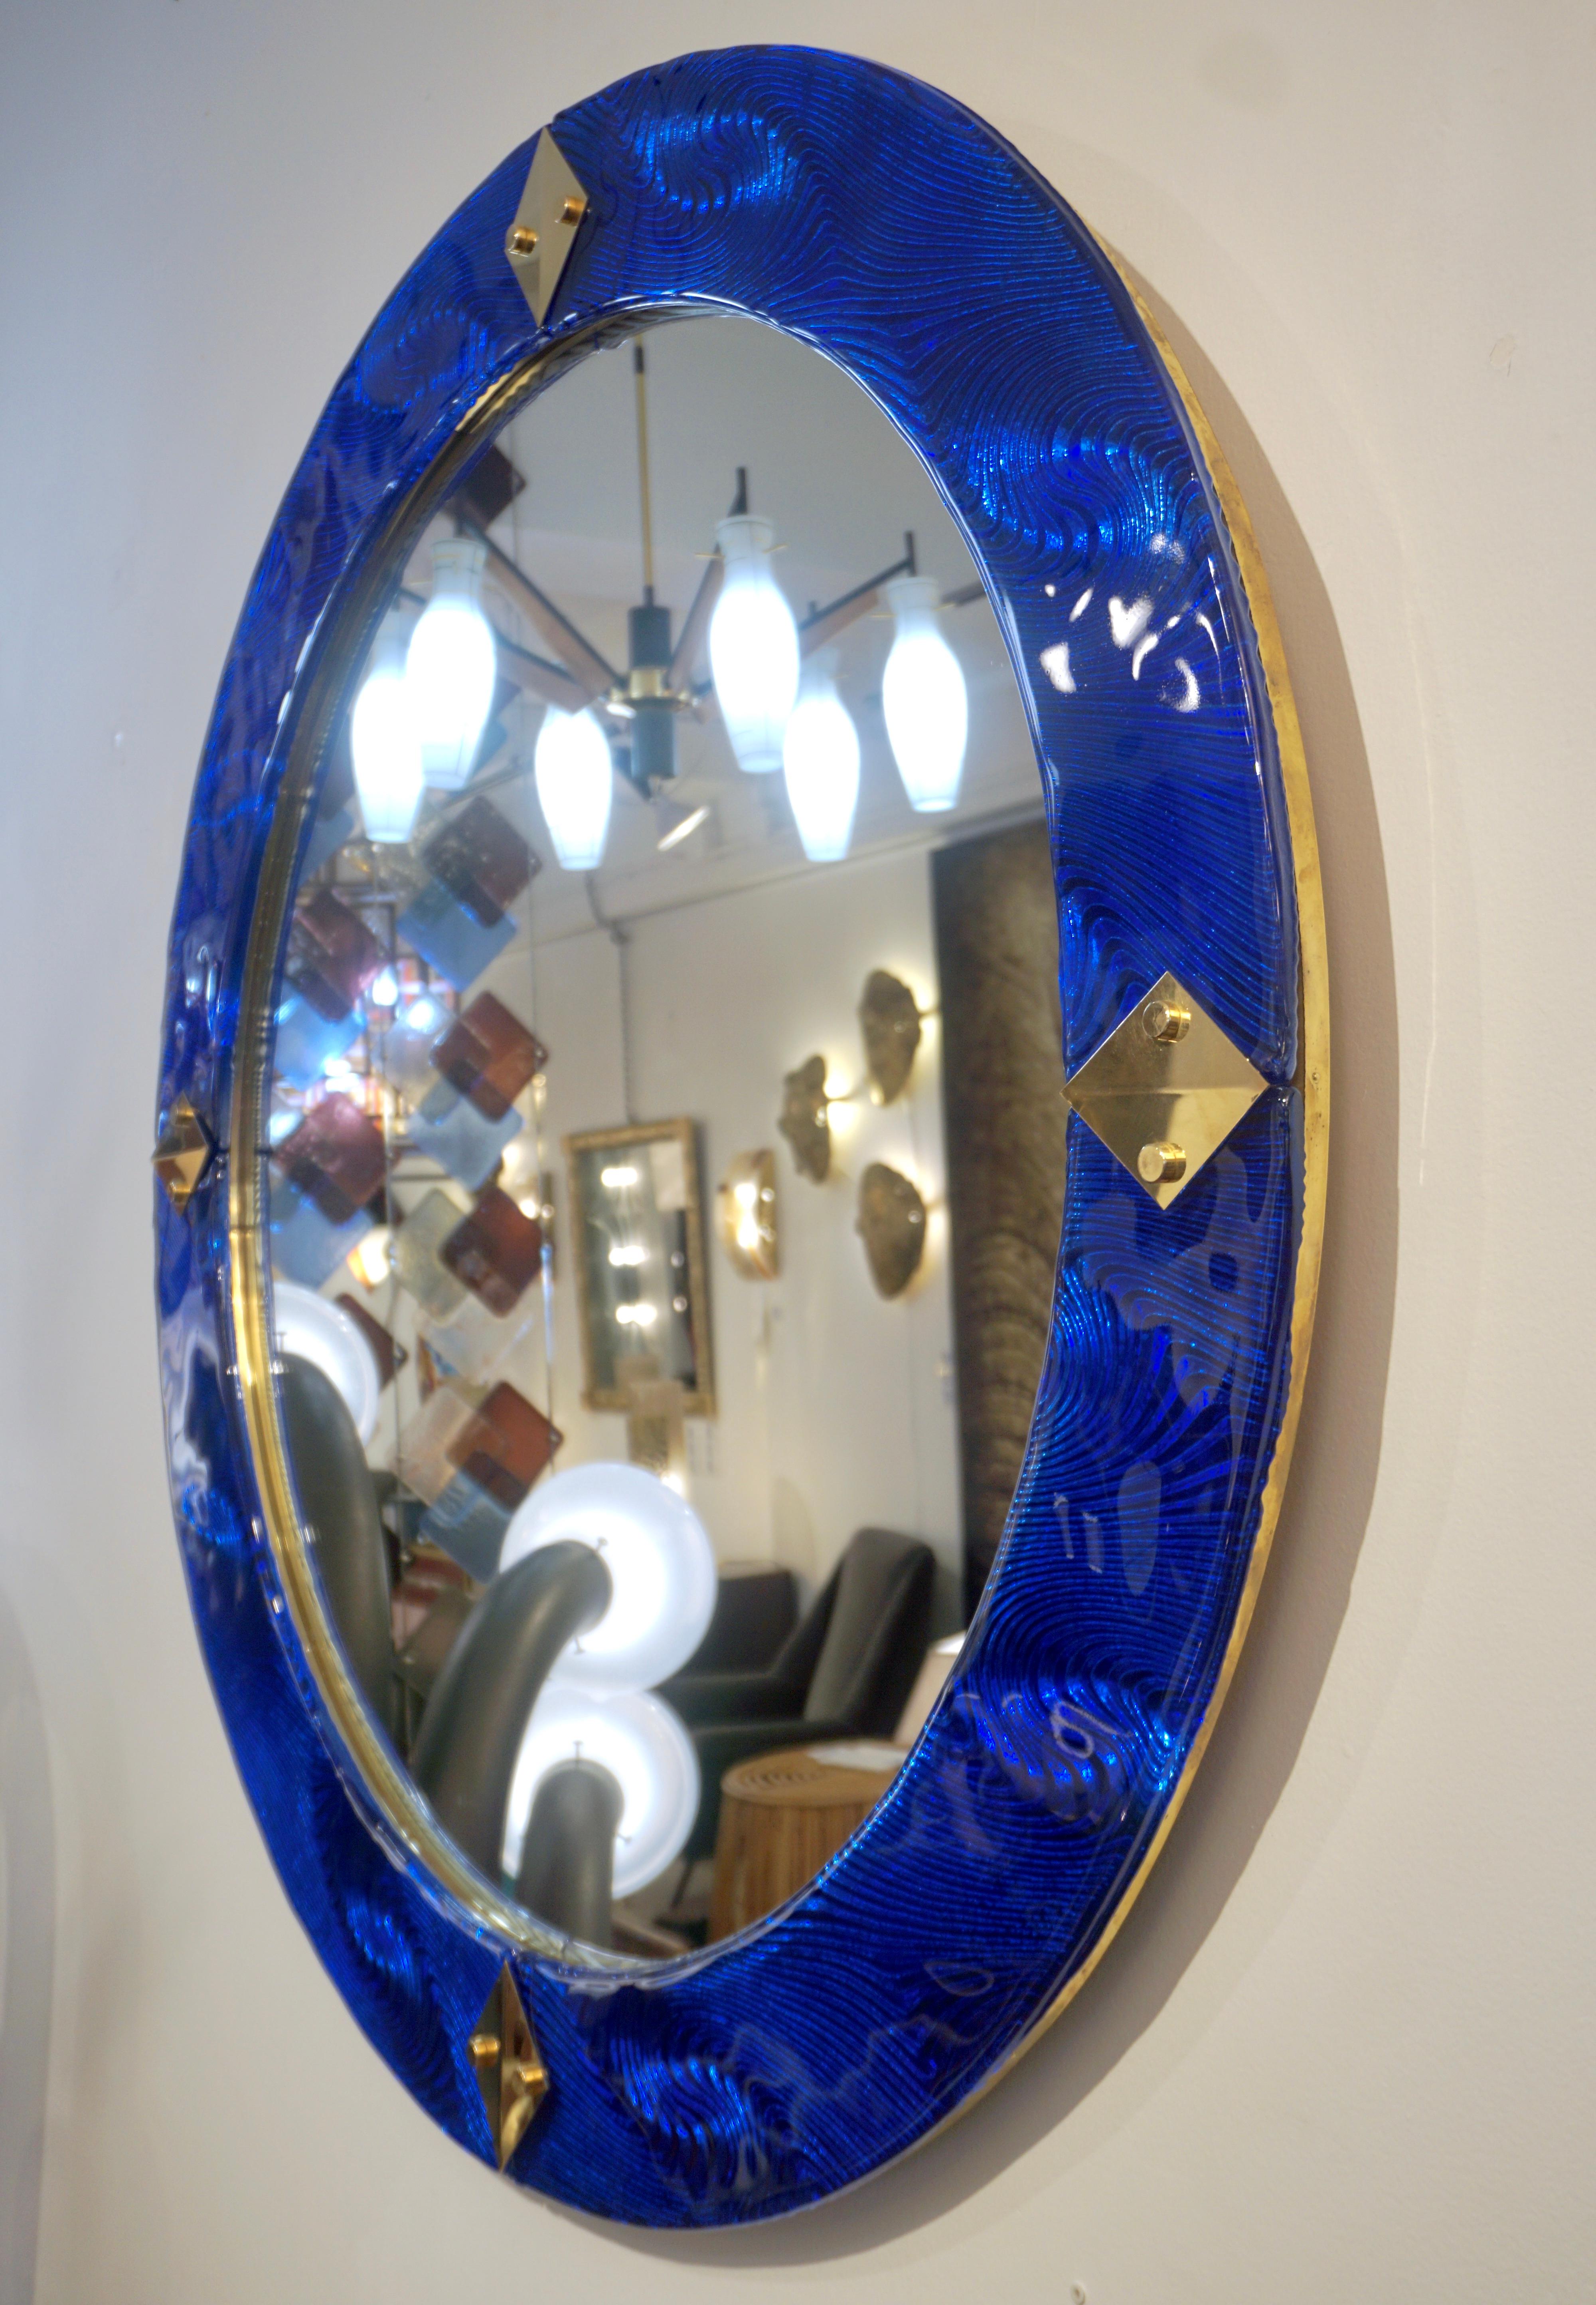 Miroir mural rond contemporain vénitien, fabriqué sur mesure en Italie, encadré d'une épaisse bordure en verre soufflé de Murano de haute qualité d'un bleu saphir royal vibrant, artistiquement arrondi sur le bord et texturé au verso avec un motif